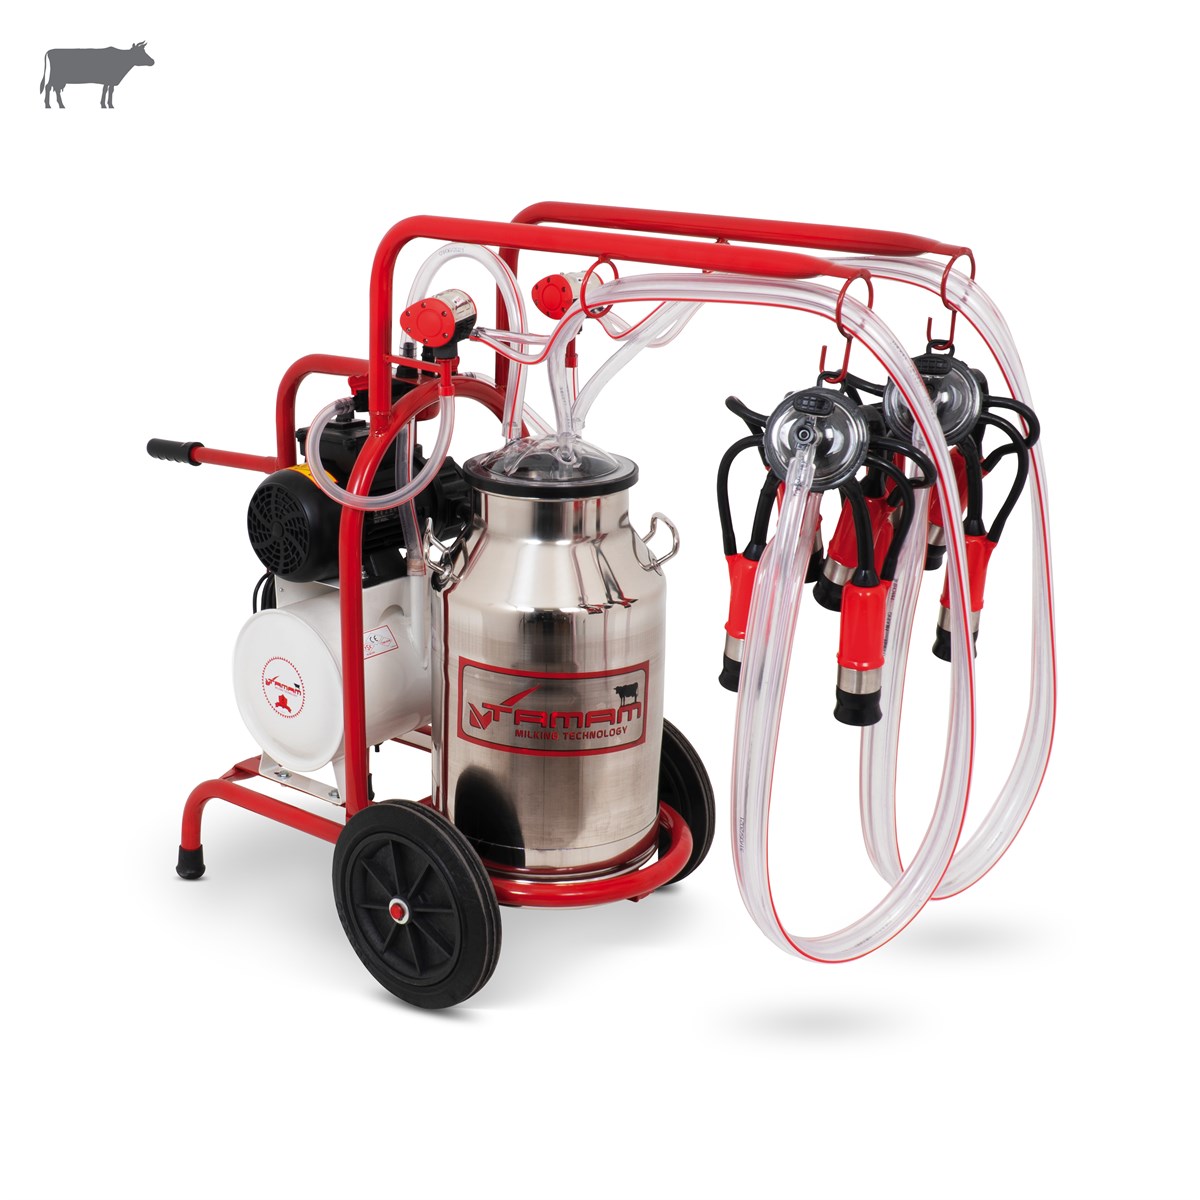 Büyükbaş İkili Süt Sağım Makinesi(Paslanmaz Güğüm-Kauçuk Memelik)(Yağlı  Pompa) | Cimritilki.com